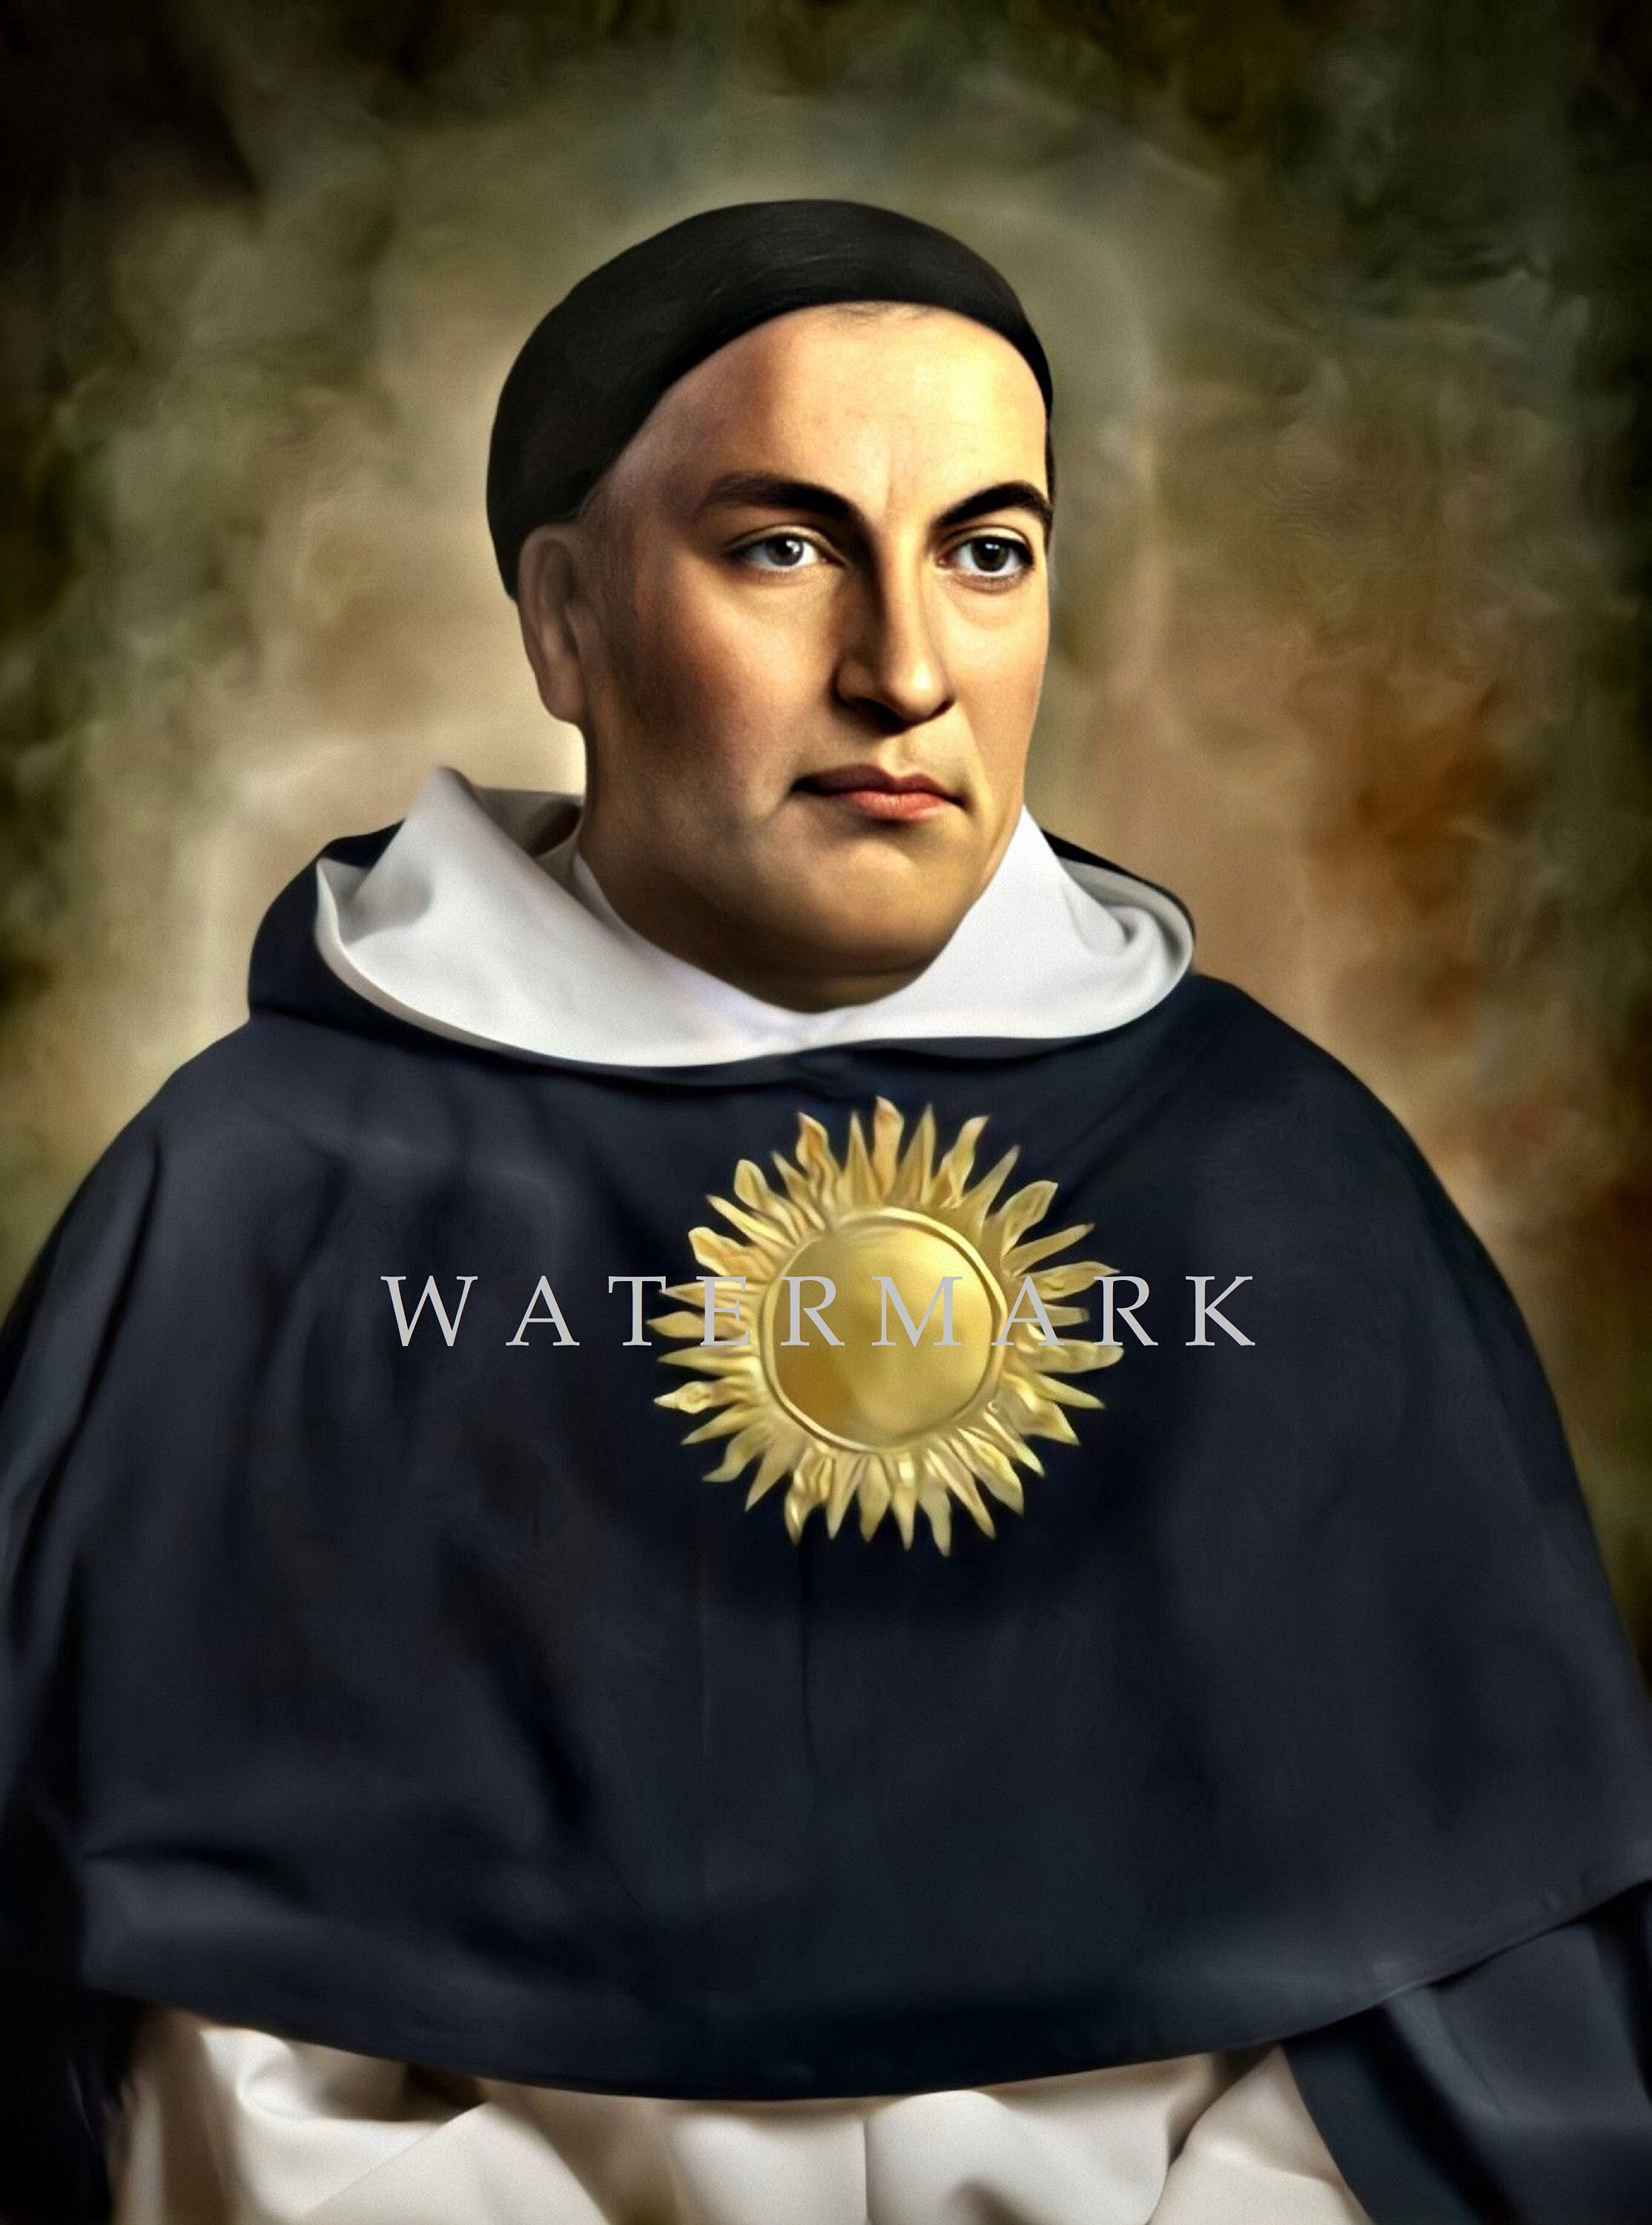 St. Thomas Aquinas Medallion Crosses Tote Bag (Black)